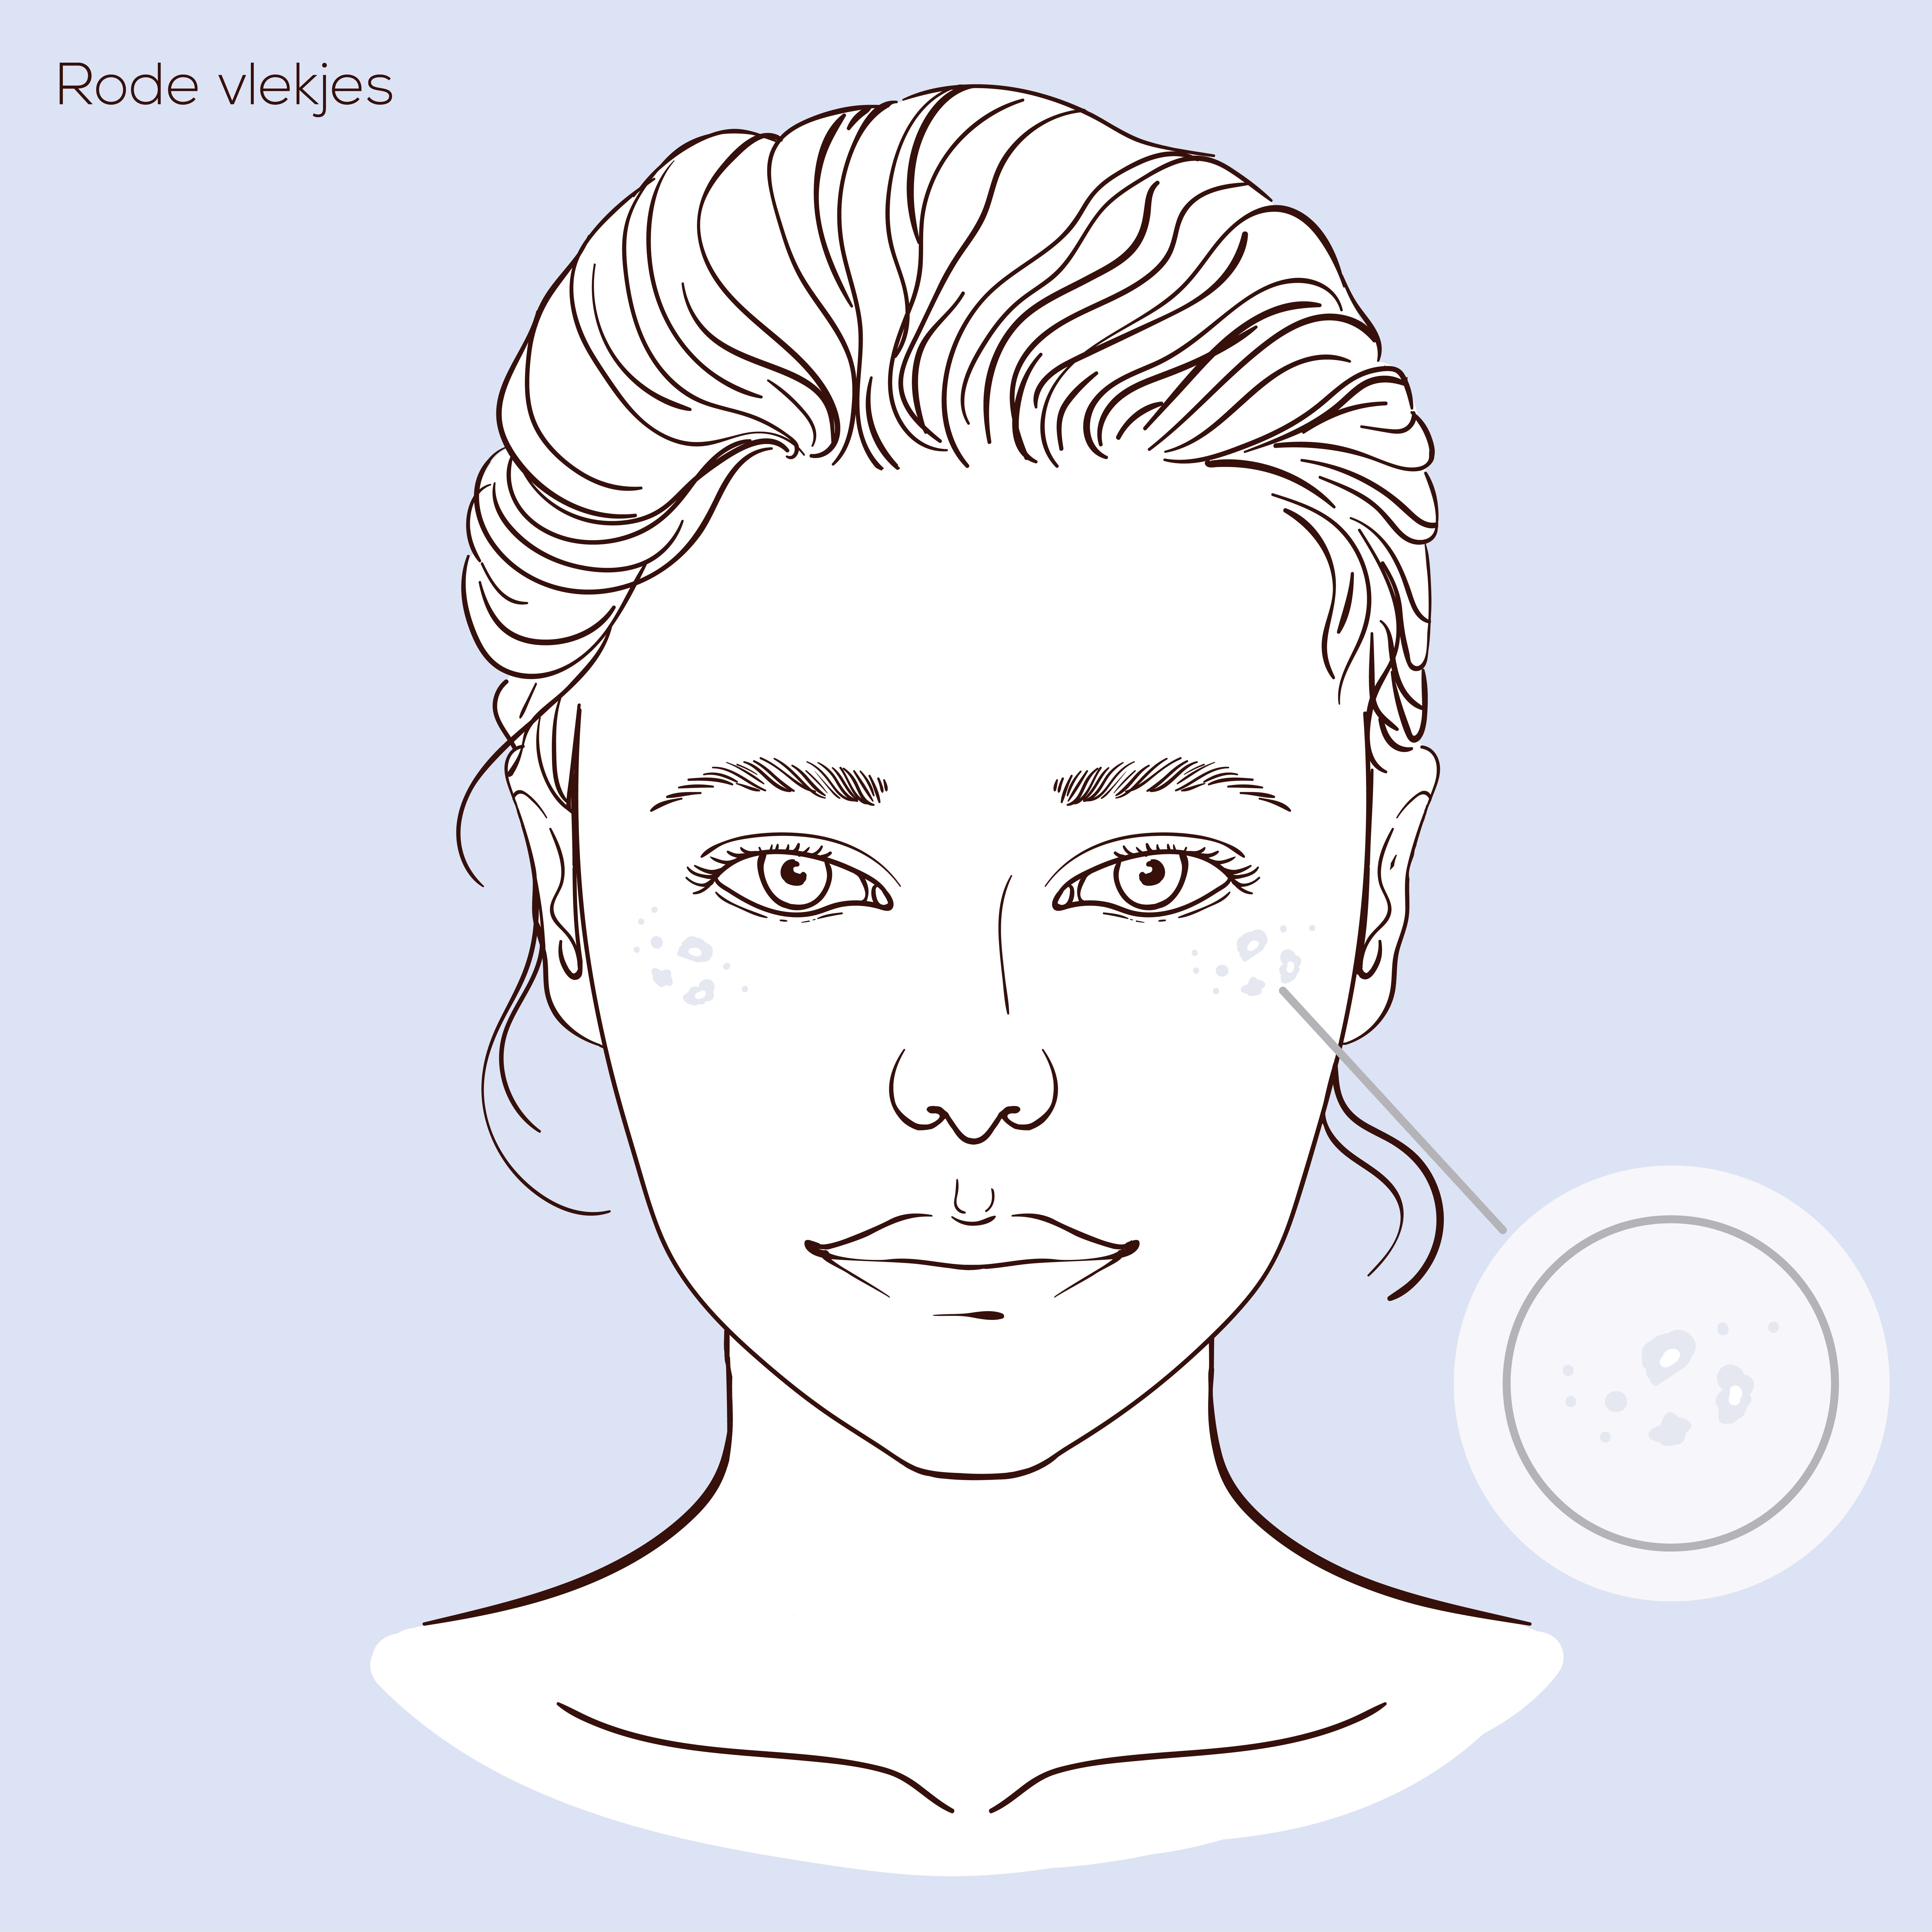 Illustratie van gezicht met huidprobleem rode vlekjes